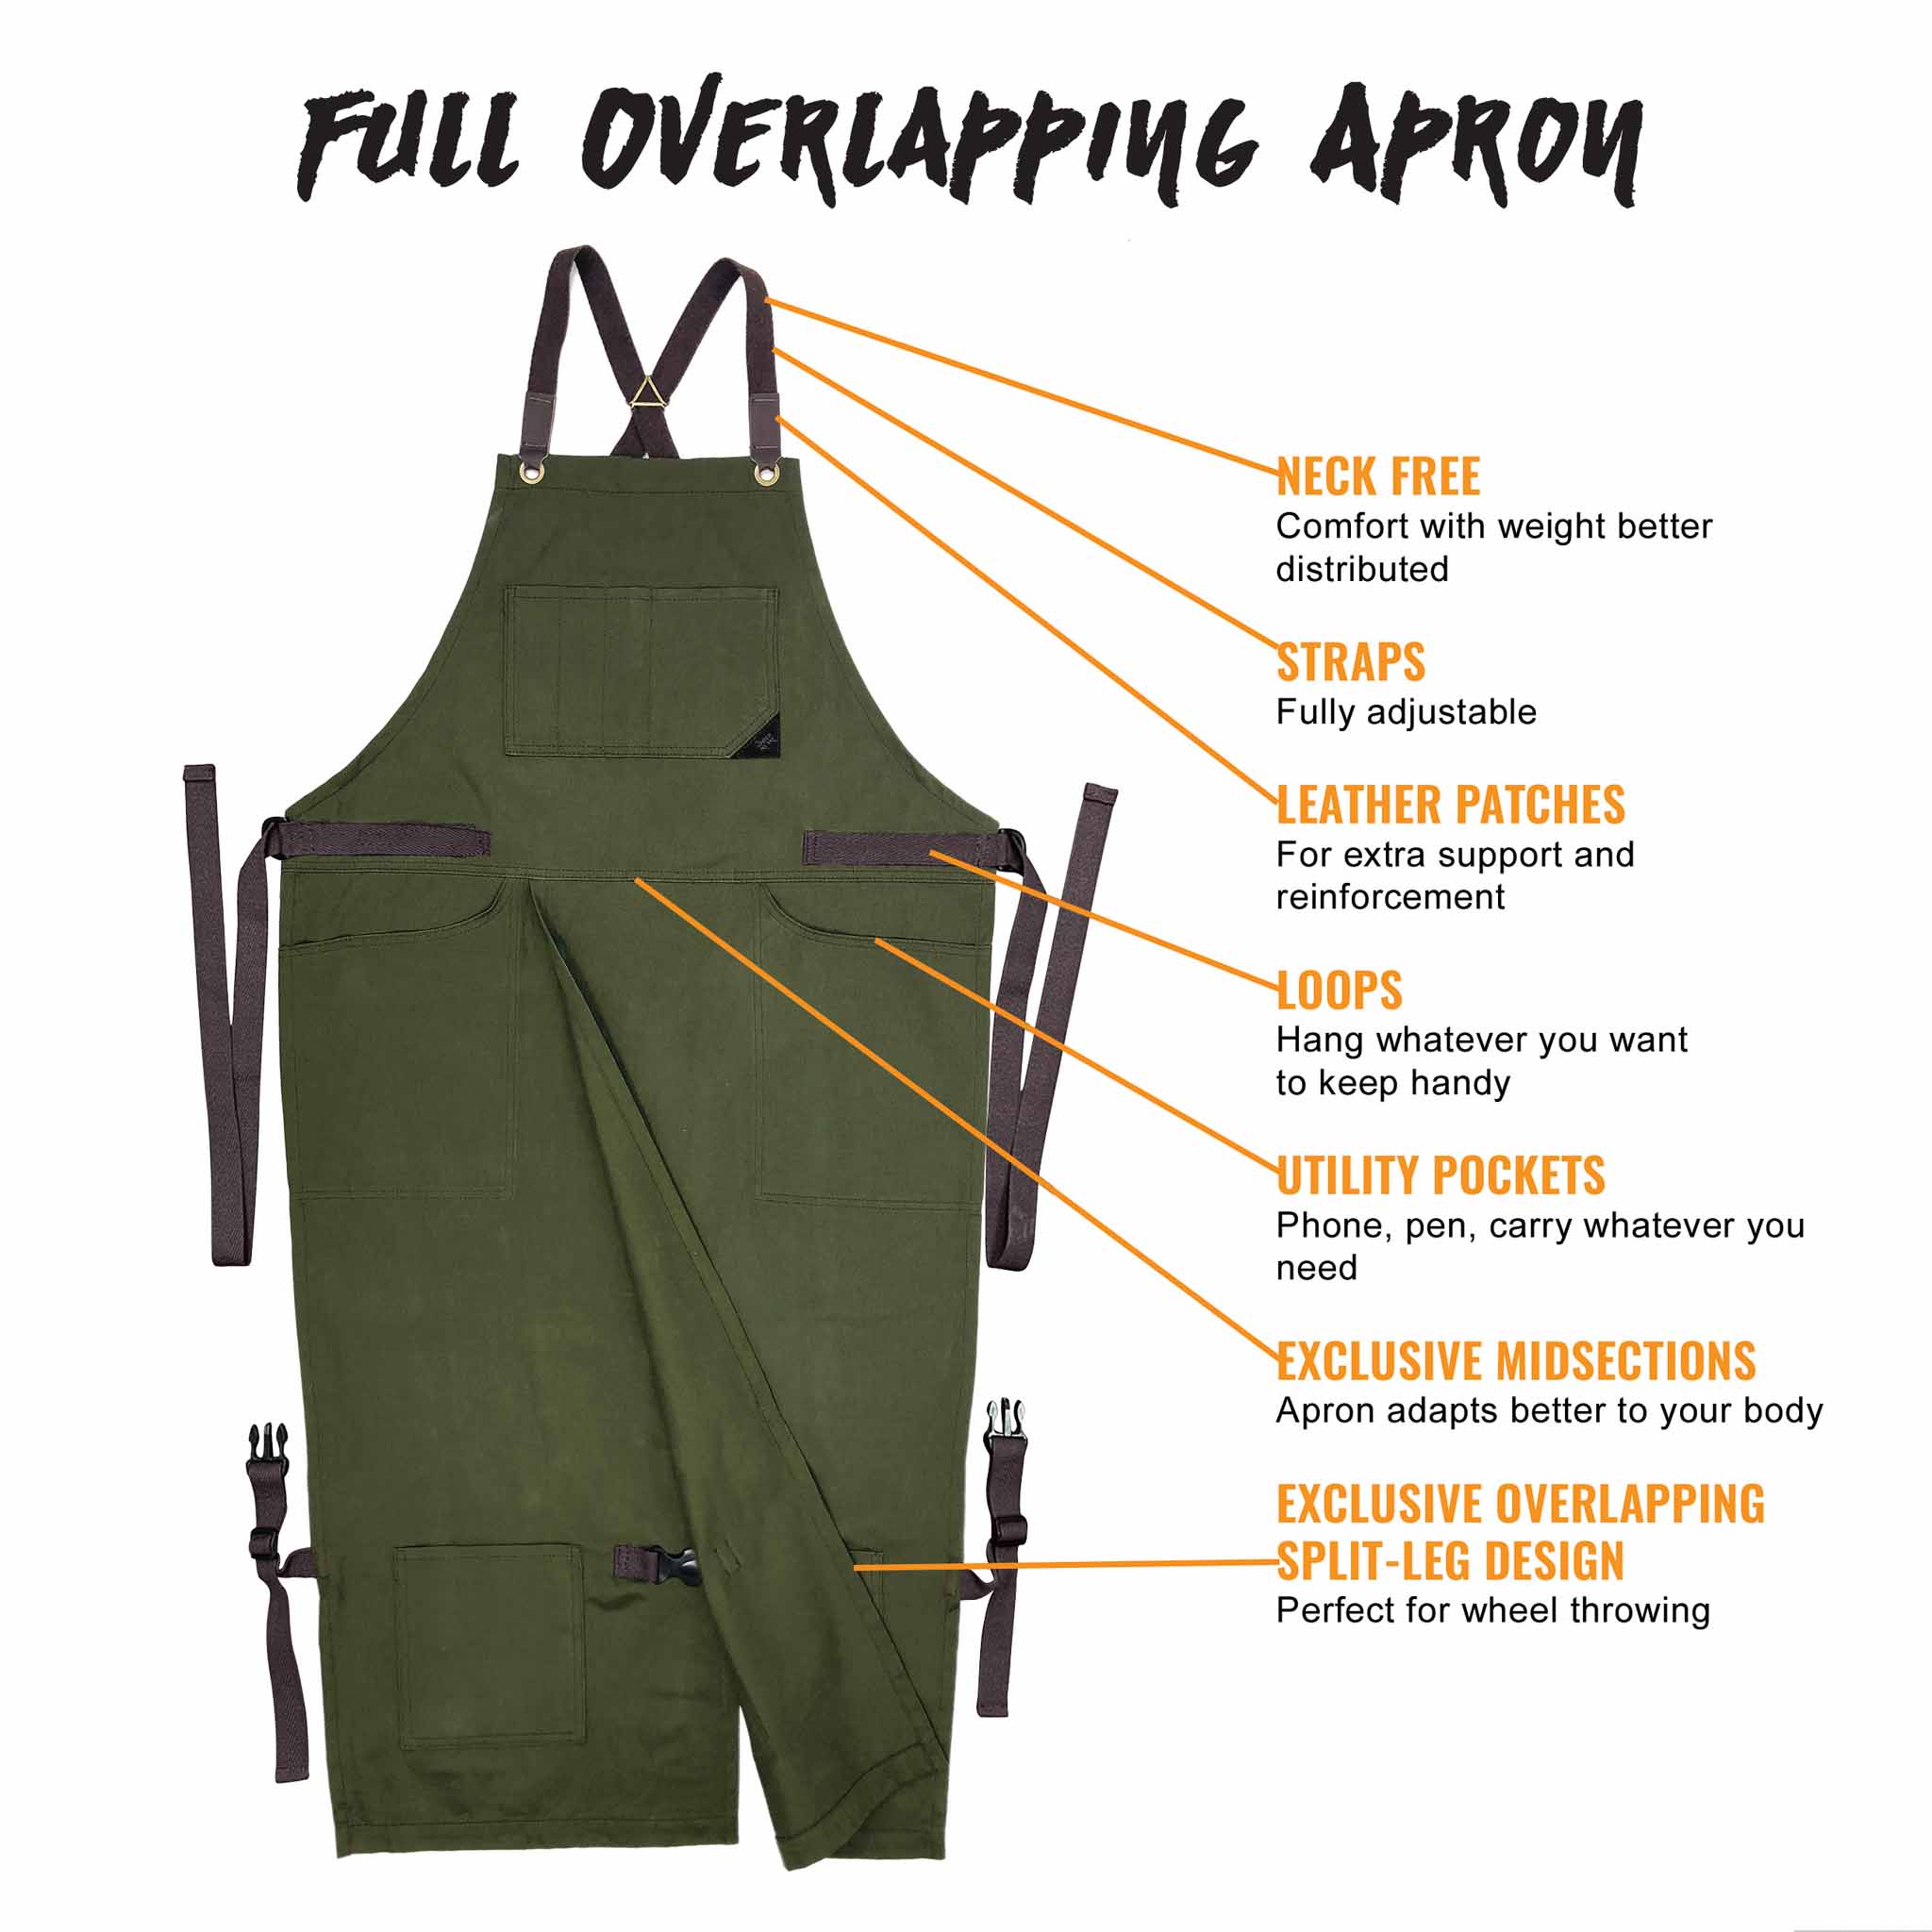 Chef Apron – Denim or Twill - Cotton Straps - Smart Pockets - Pro